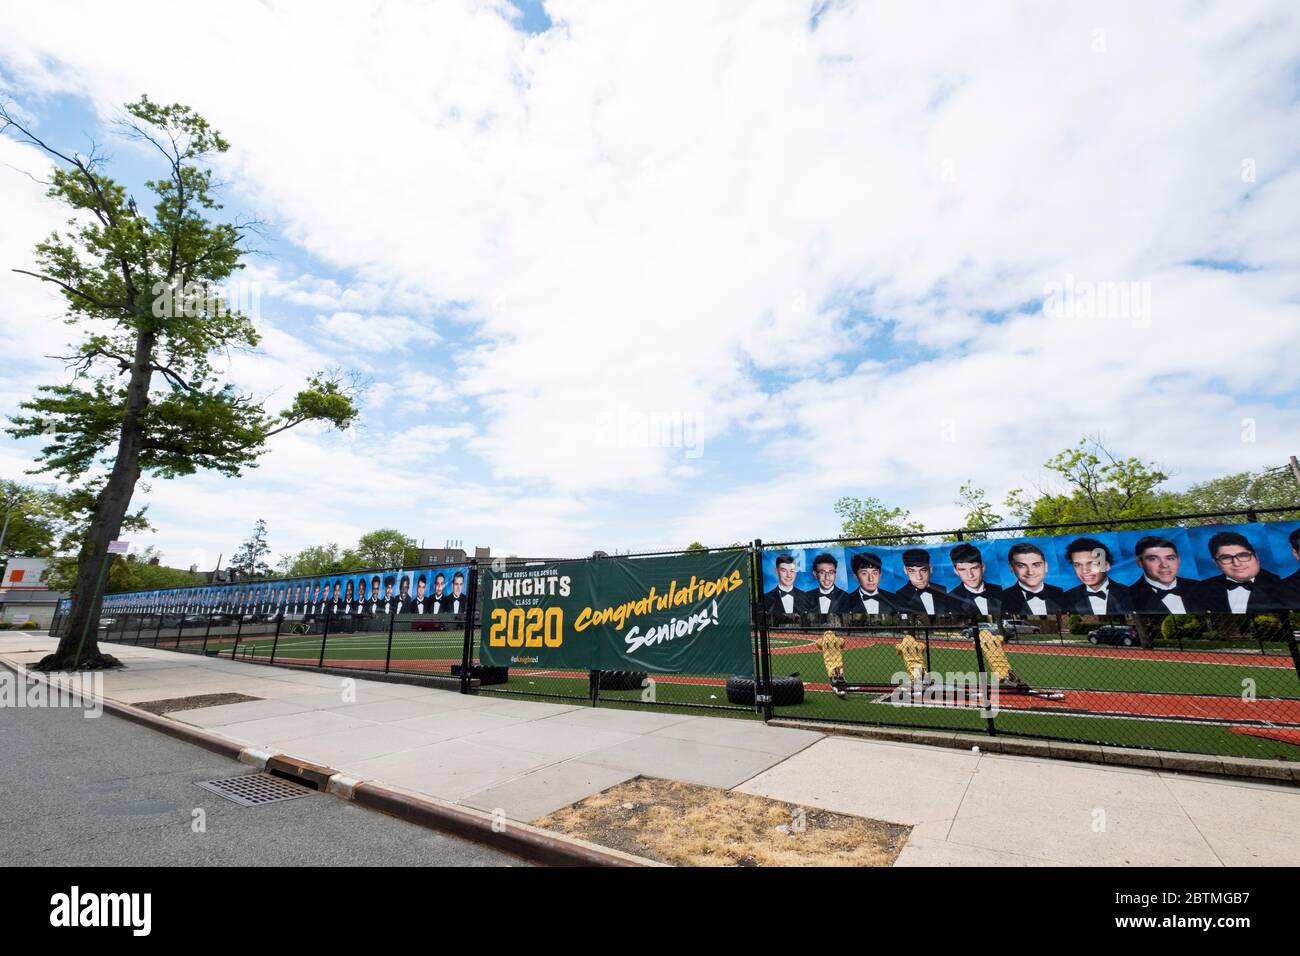 En lugar de una ceremonia de graduación, la Escuela Secundaria de Santa Cruz colgó una pancarta y fotos de los graduados. En Flushing, Queens, Nueva York. Foto de stock